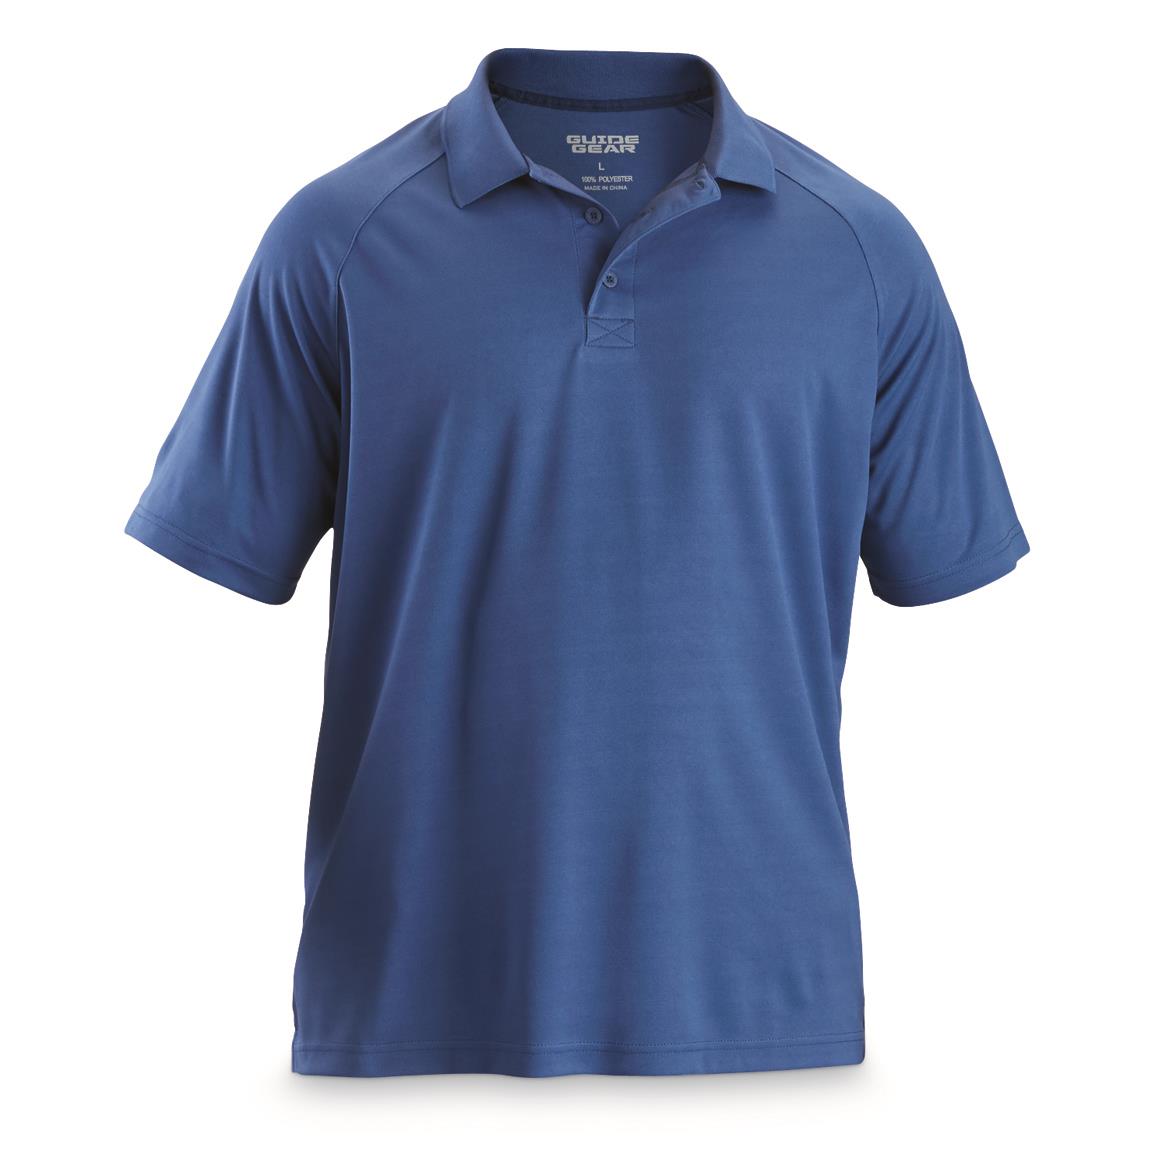 Guide Gear Men's Performance Polo Shirt, Cobalt Blue